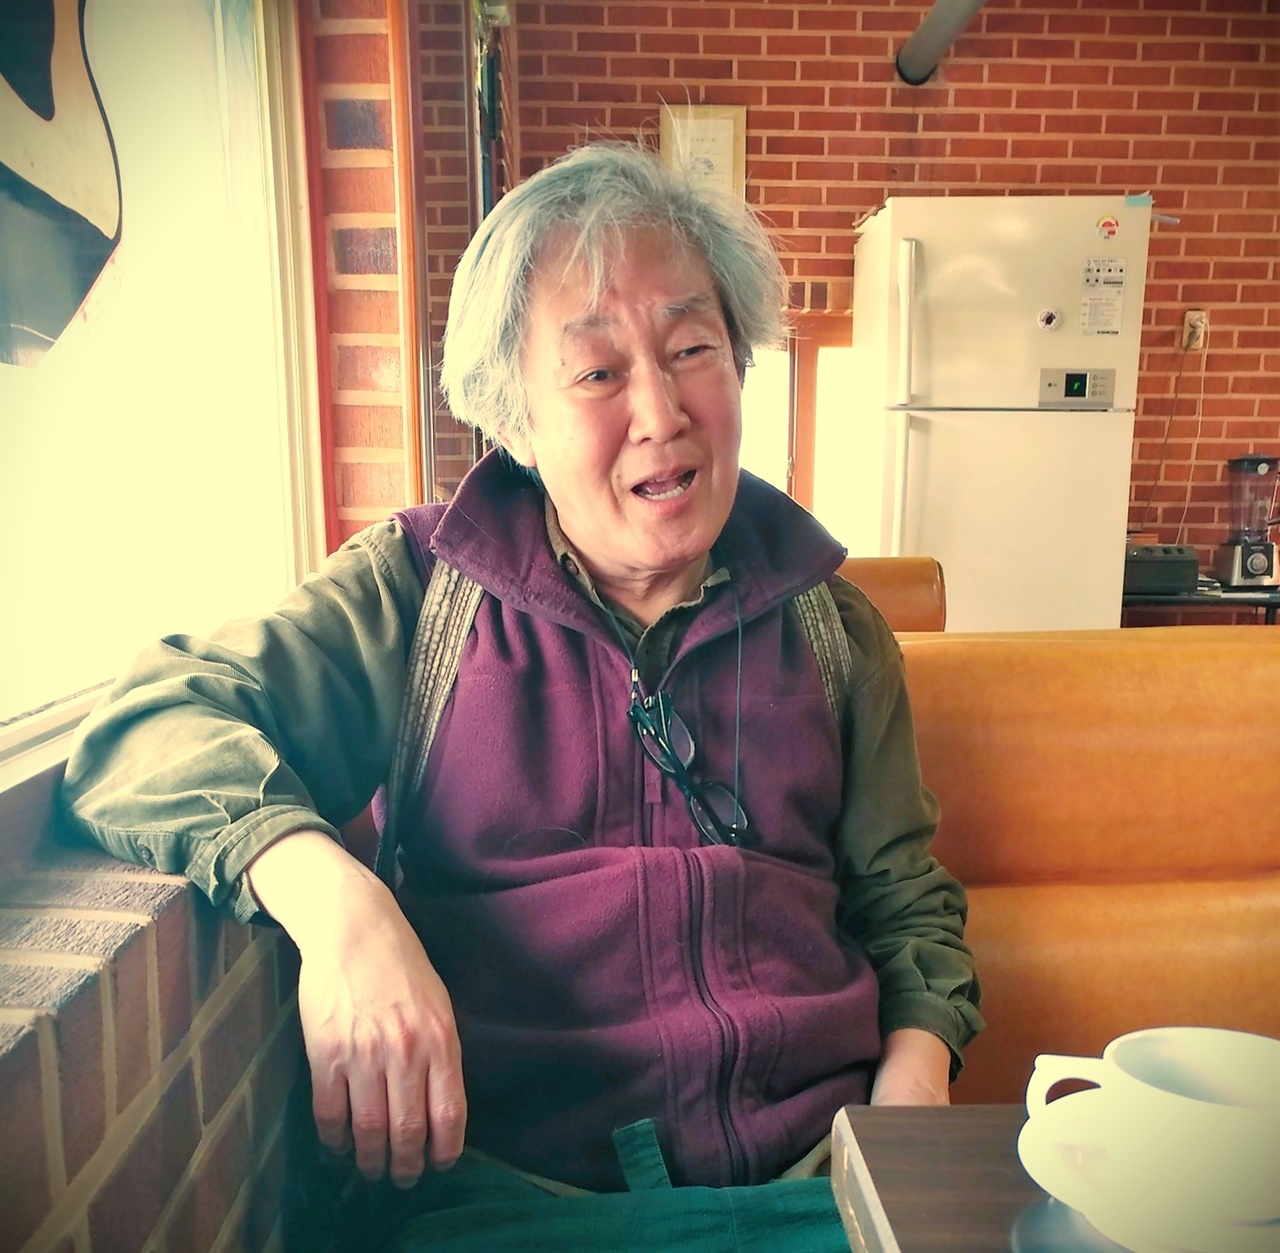 양평의 한 카페에서 담소를 나누는 김성동, 그는 찾아오는 손님을 늘 반갑게 맞이하며 분단 속에 가려진 역사 이야기를 많이 했다.  